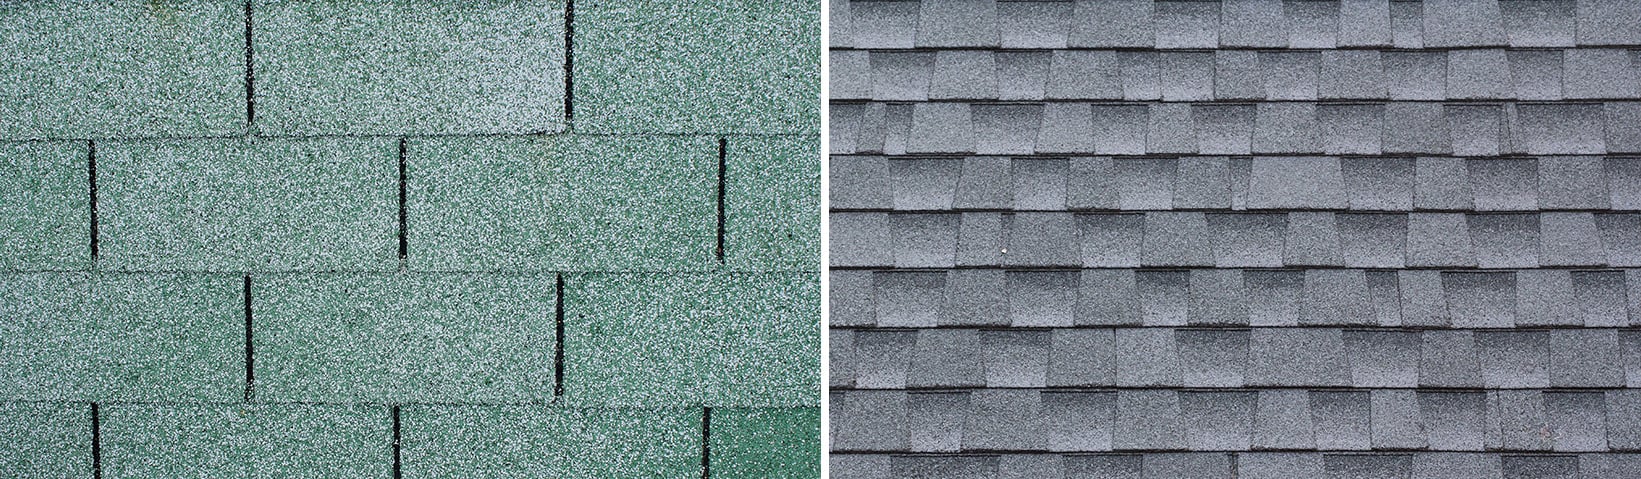 decra-metal-roofing-web-architectural-shingles-vs-three-tab-asphalt-shingles